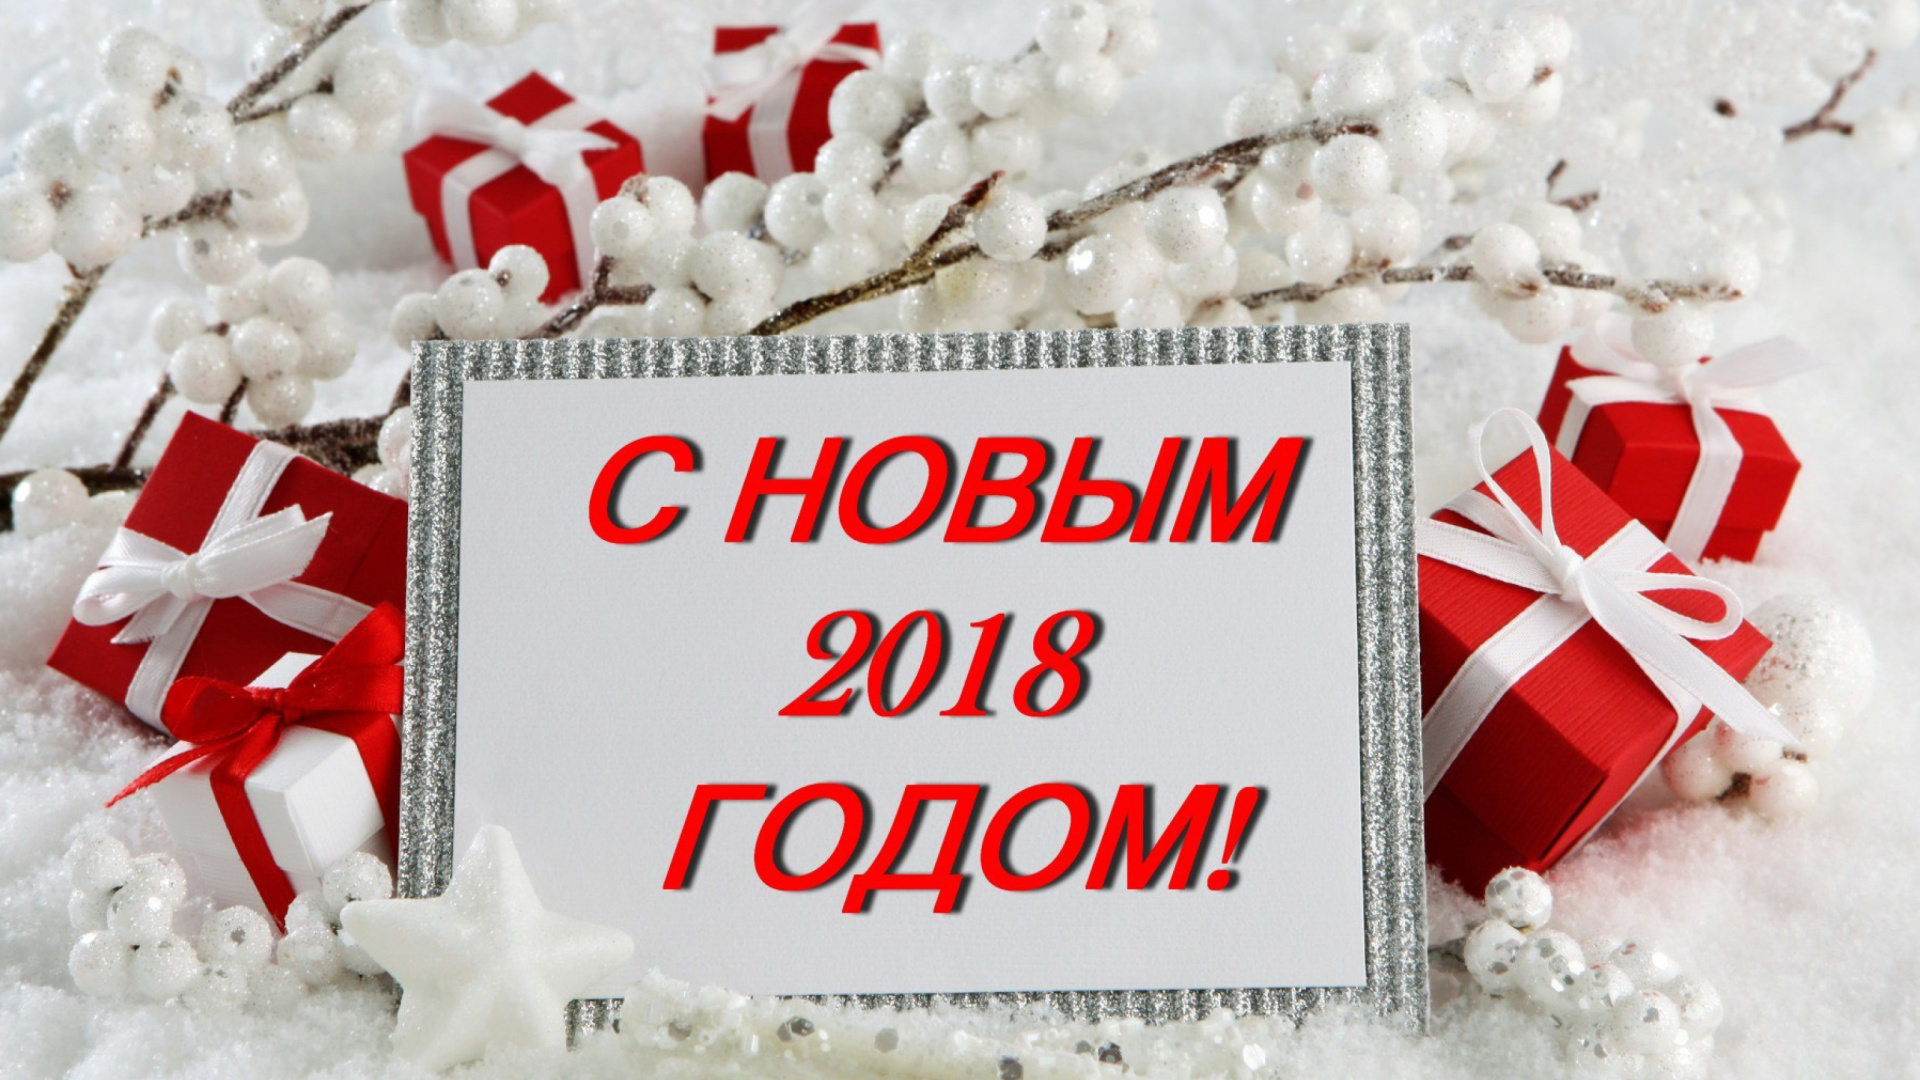 Sfondi Happy New 2018 Year 1920x1080